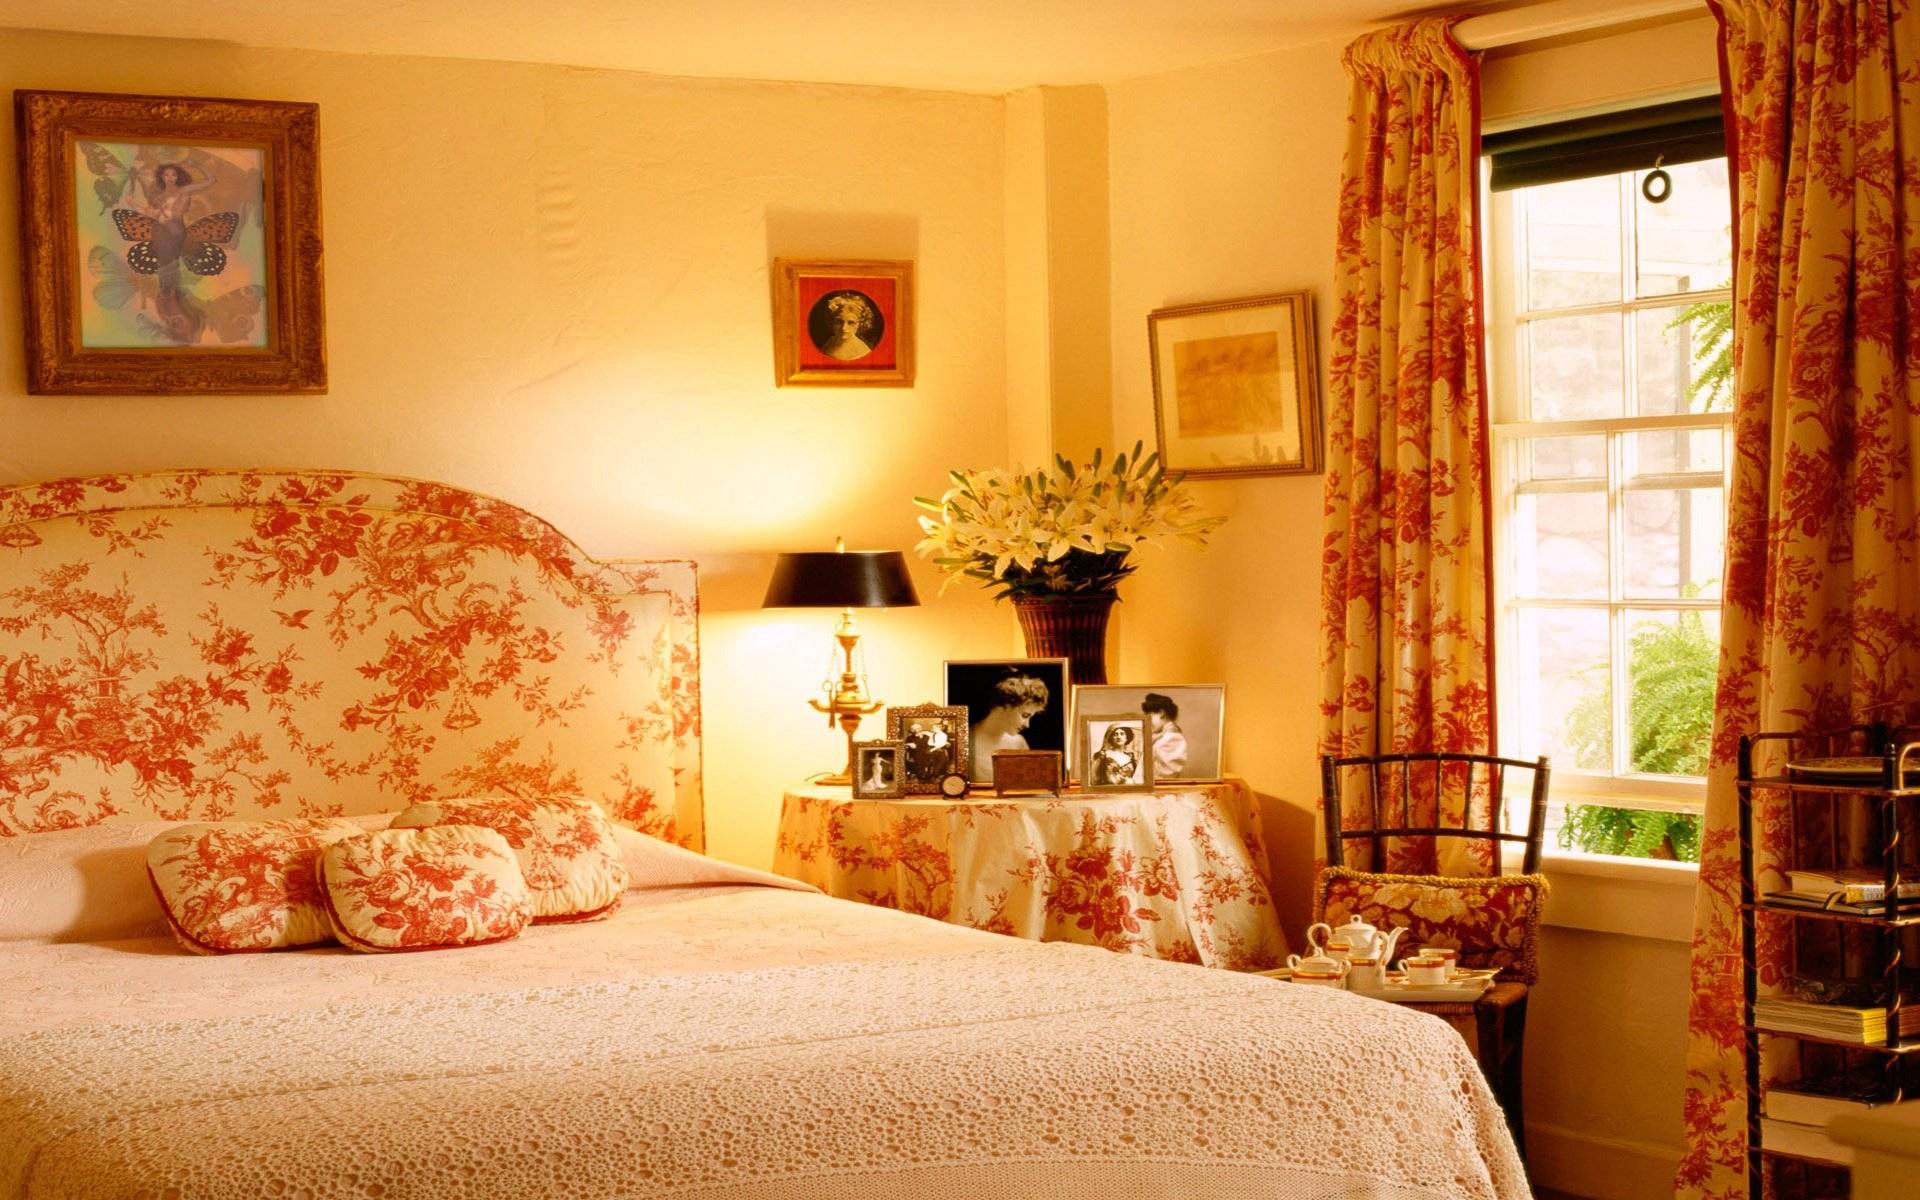 Как сделать спальню уютной своими руками: цвет, мебель, текстиль, декор (+35 фото)